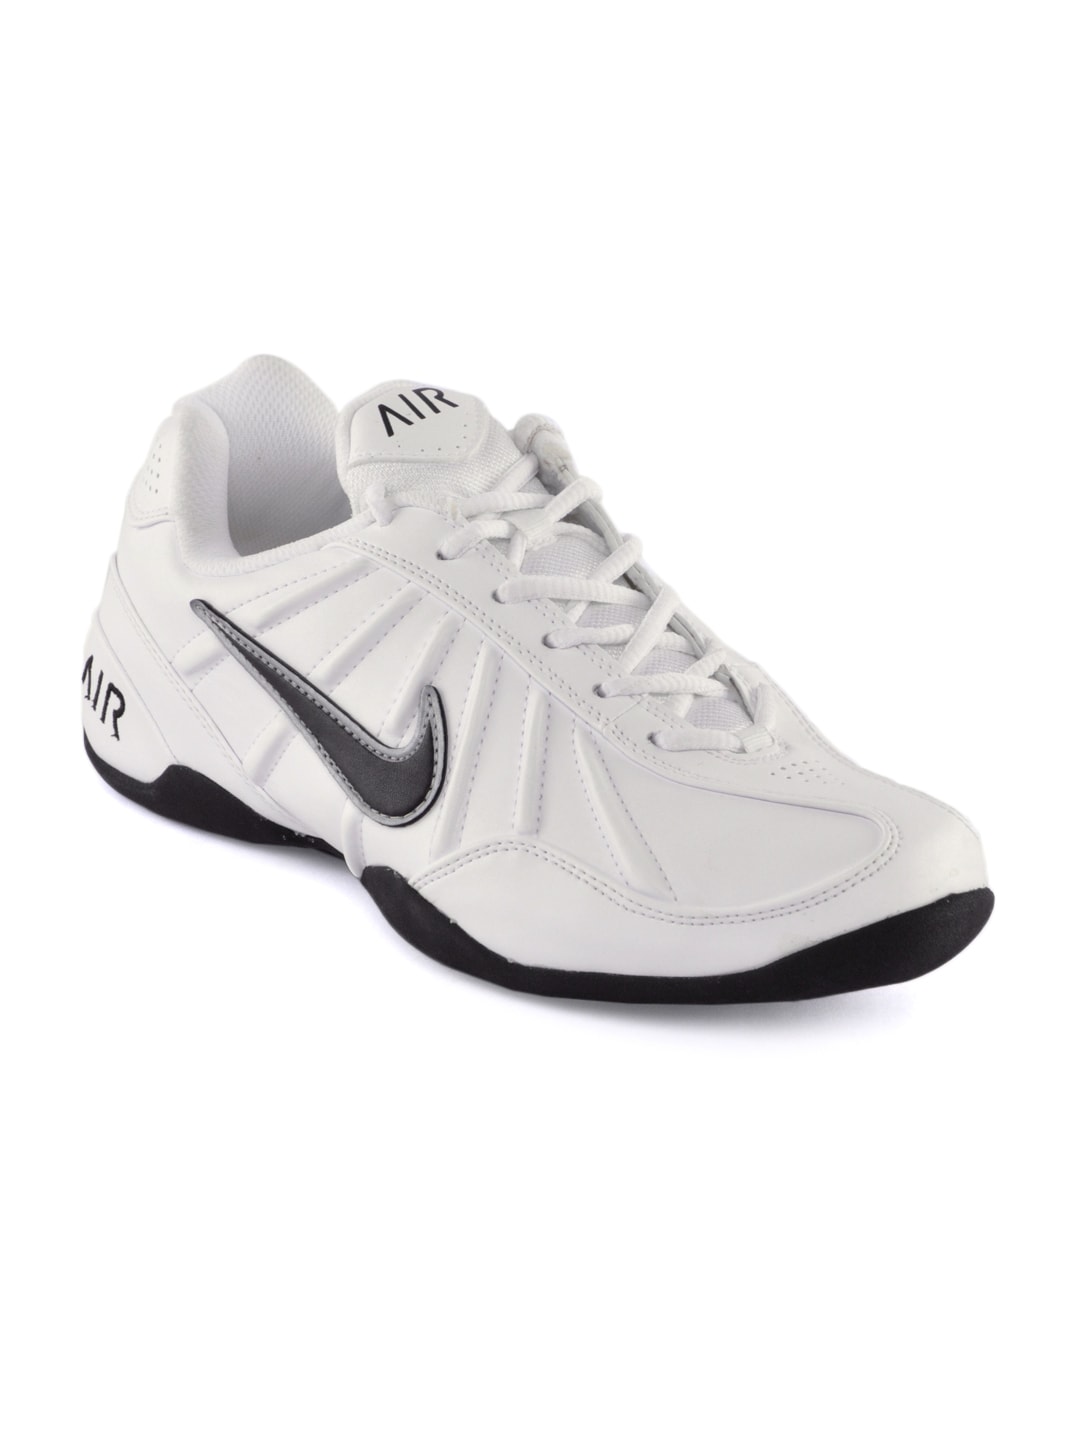 Nike Men Air Endurance White Casual Shoes